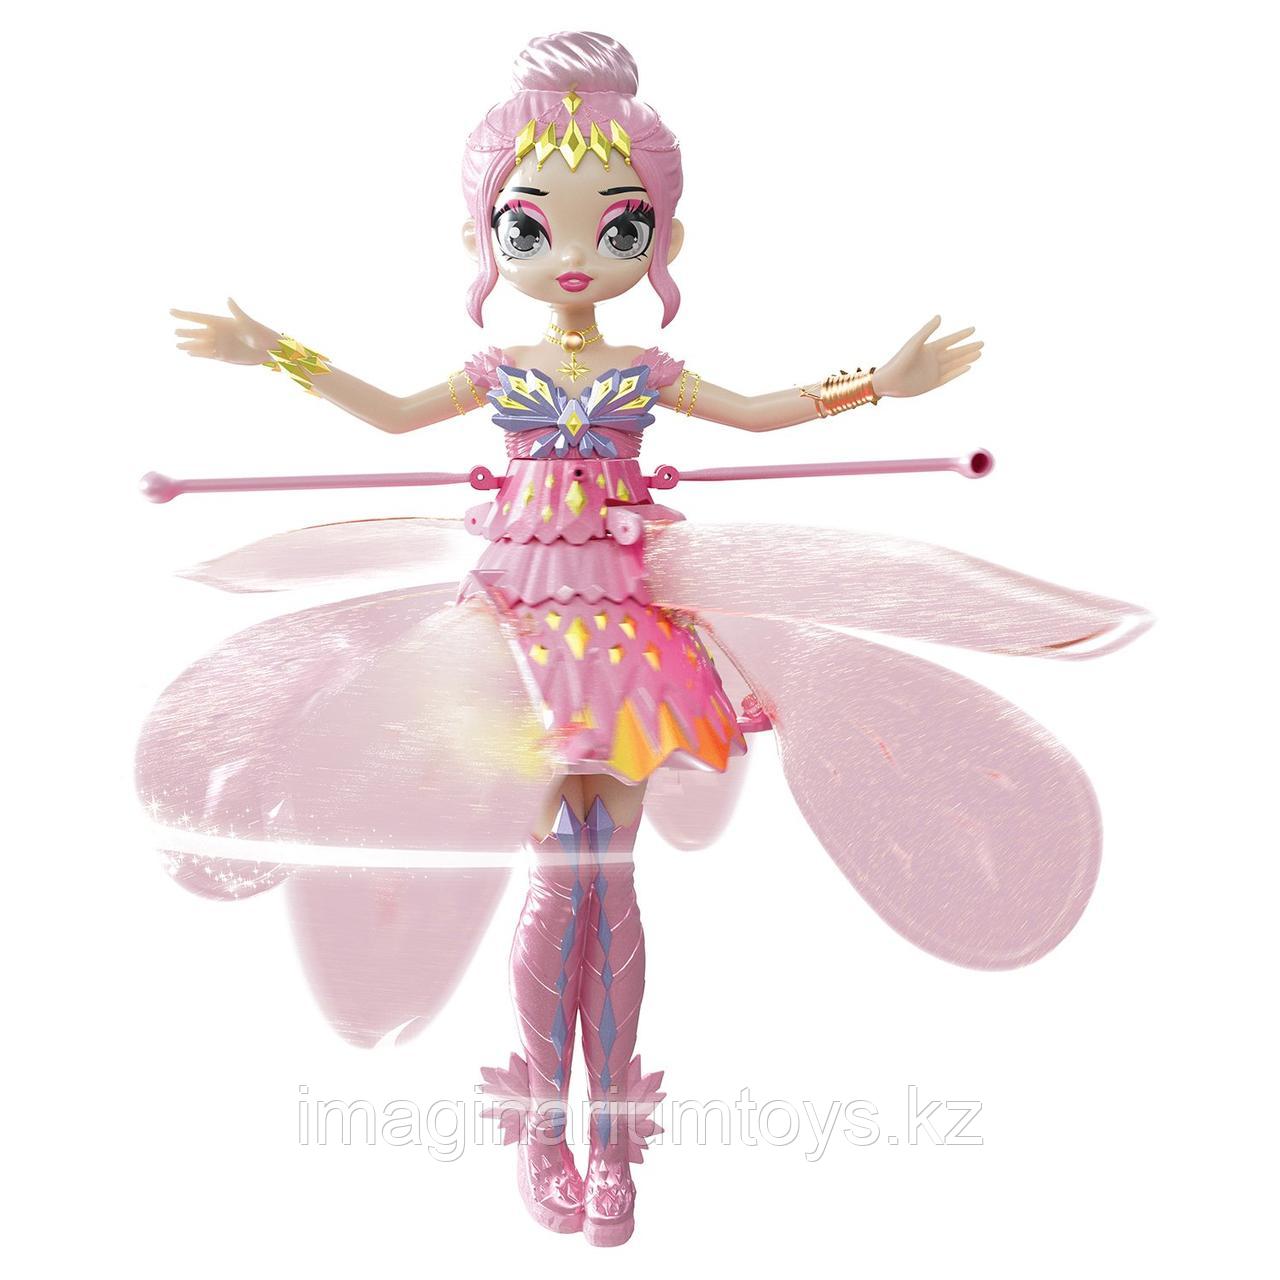 Игрушка Летающая фея Hatchimals Пикси розовая